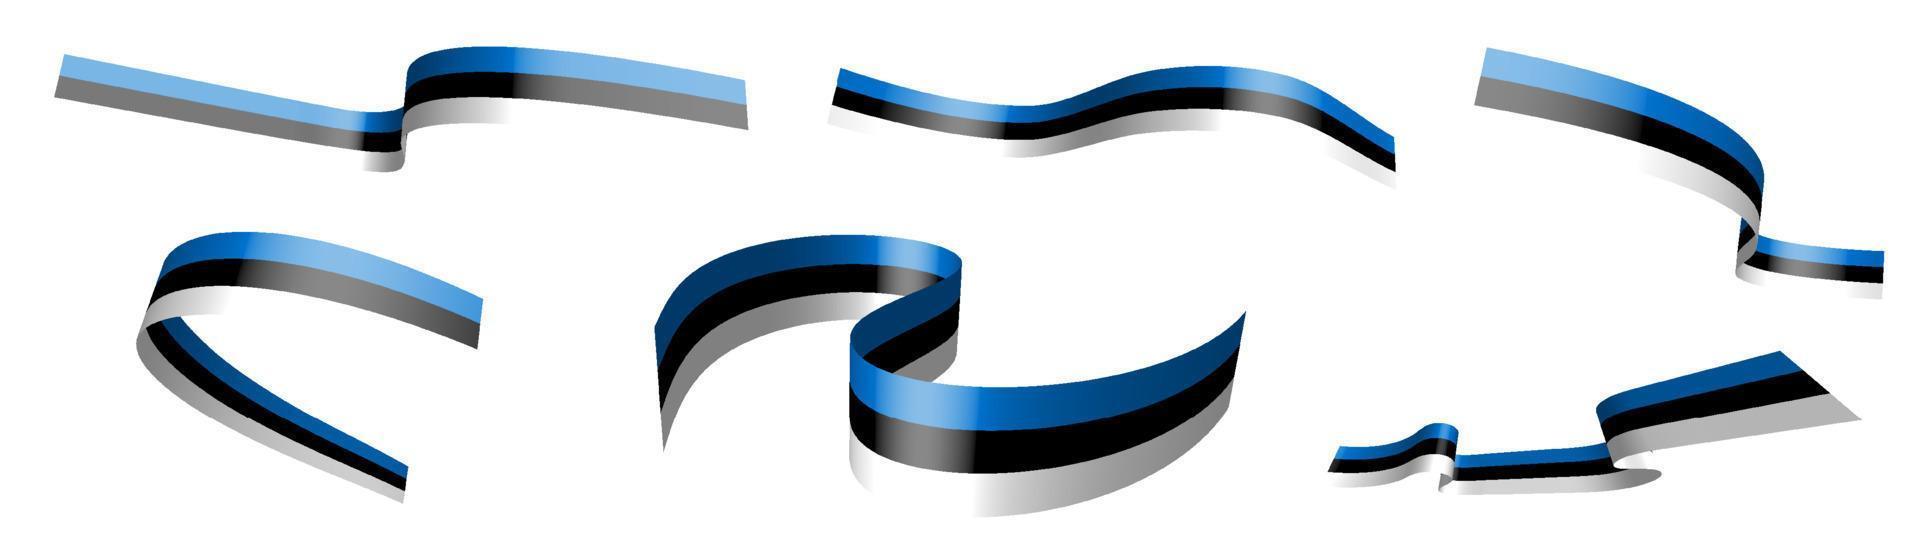 ensemble de rubans de vacances. drapeau estonien flottant au vent. séparation en couches inférieures et supérieures. élément de conception. vecteur sur fond blanc